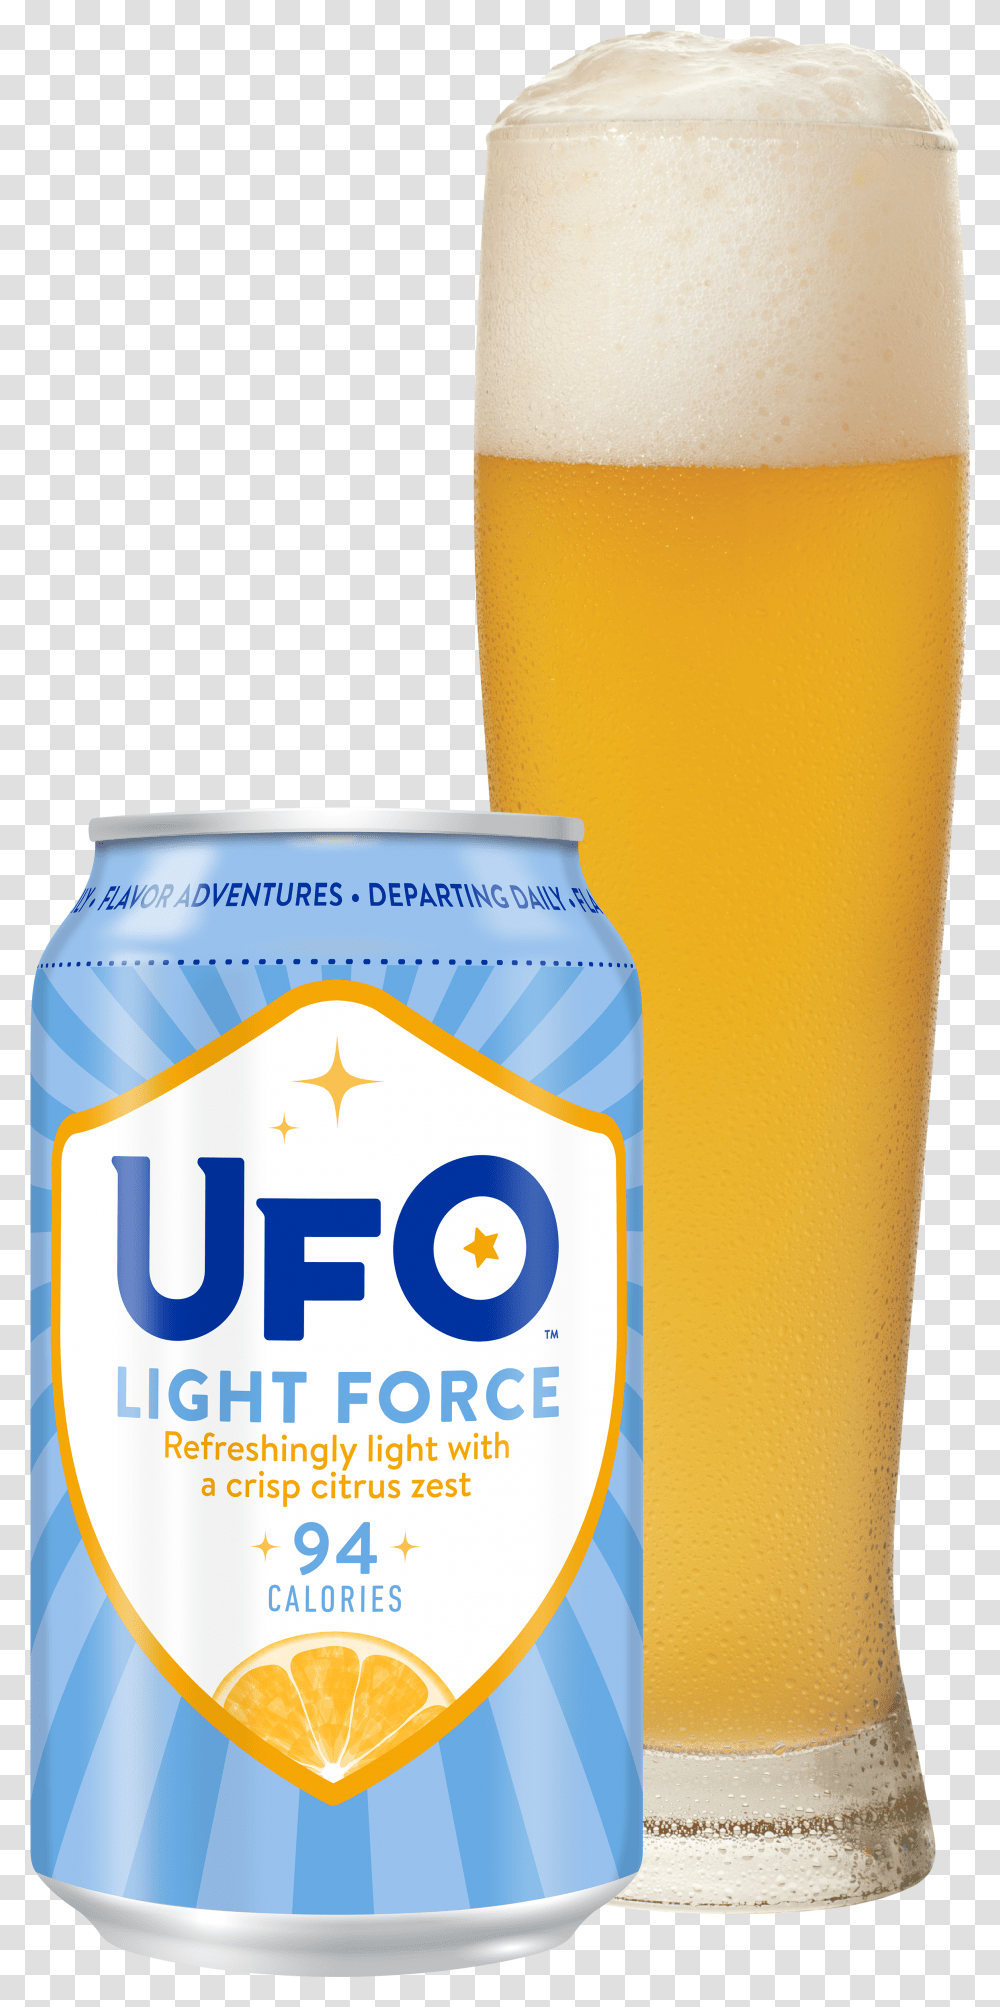 Light Force Ufo Light Force Beer Transparent Png